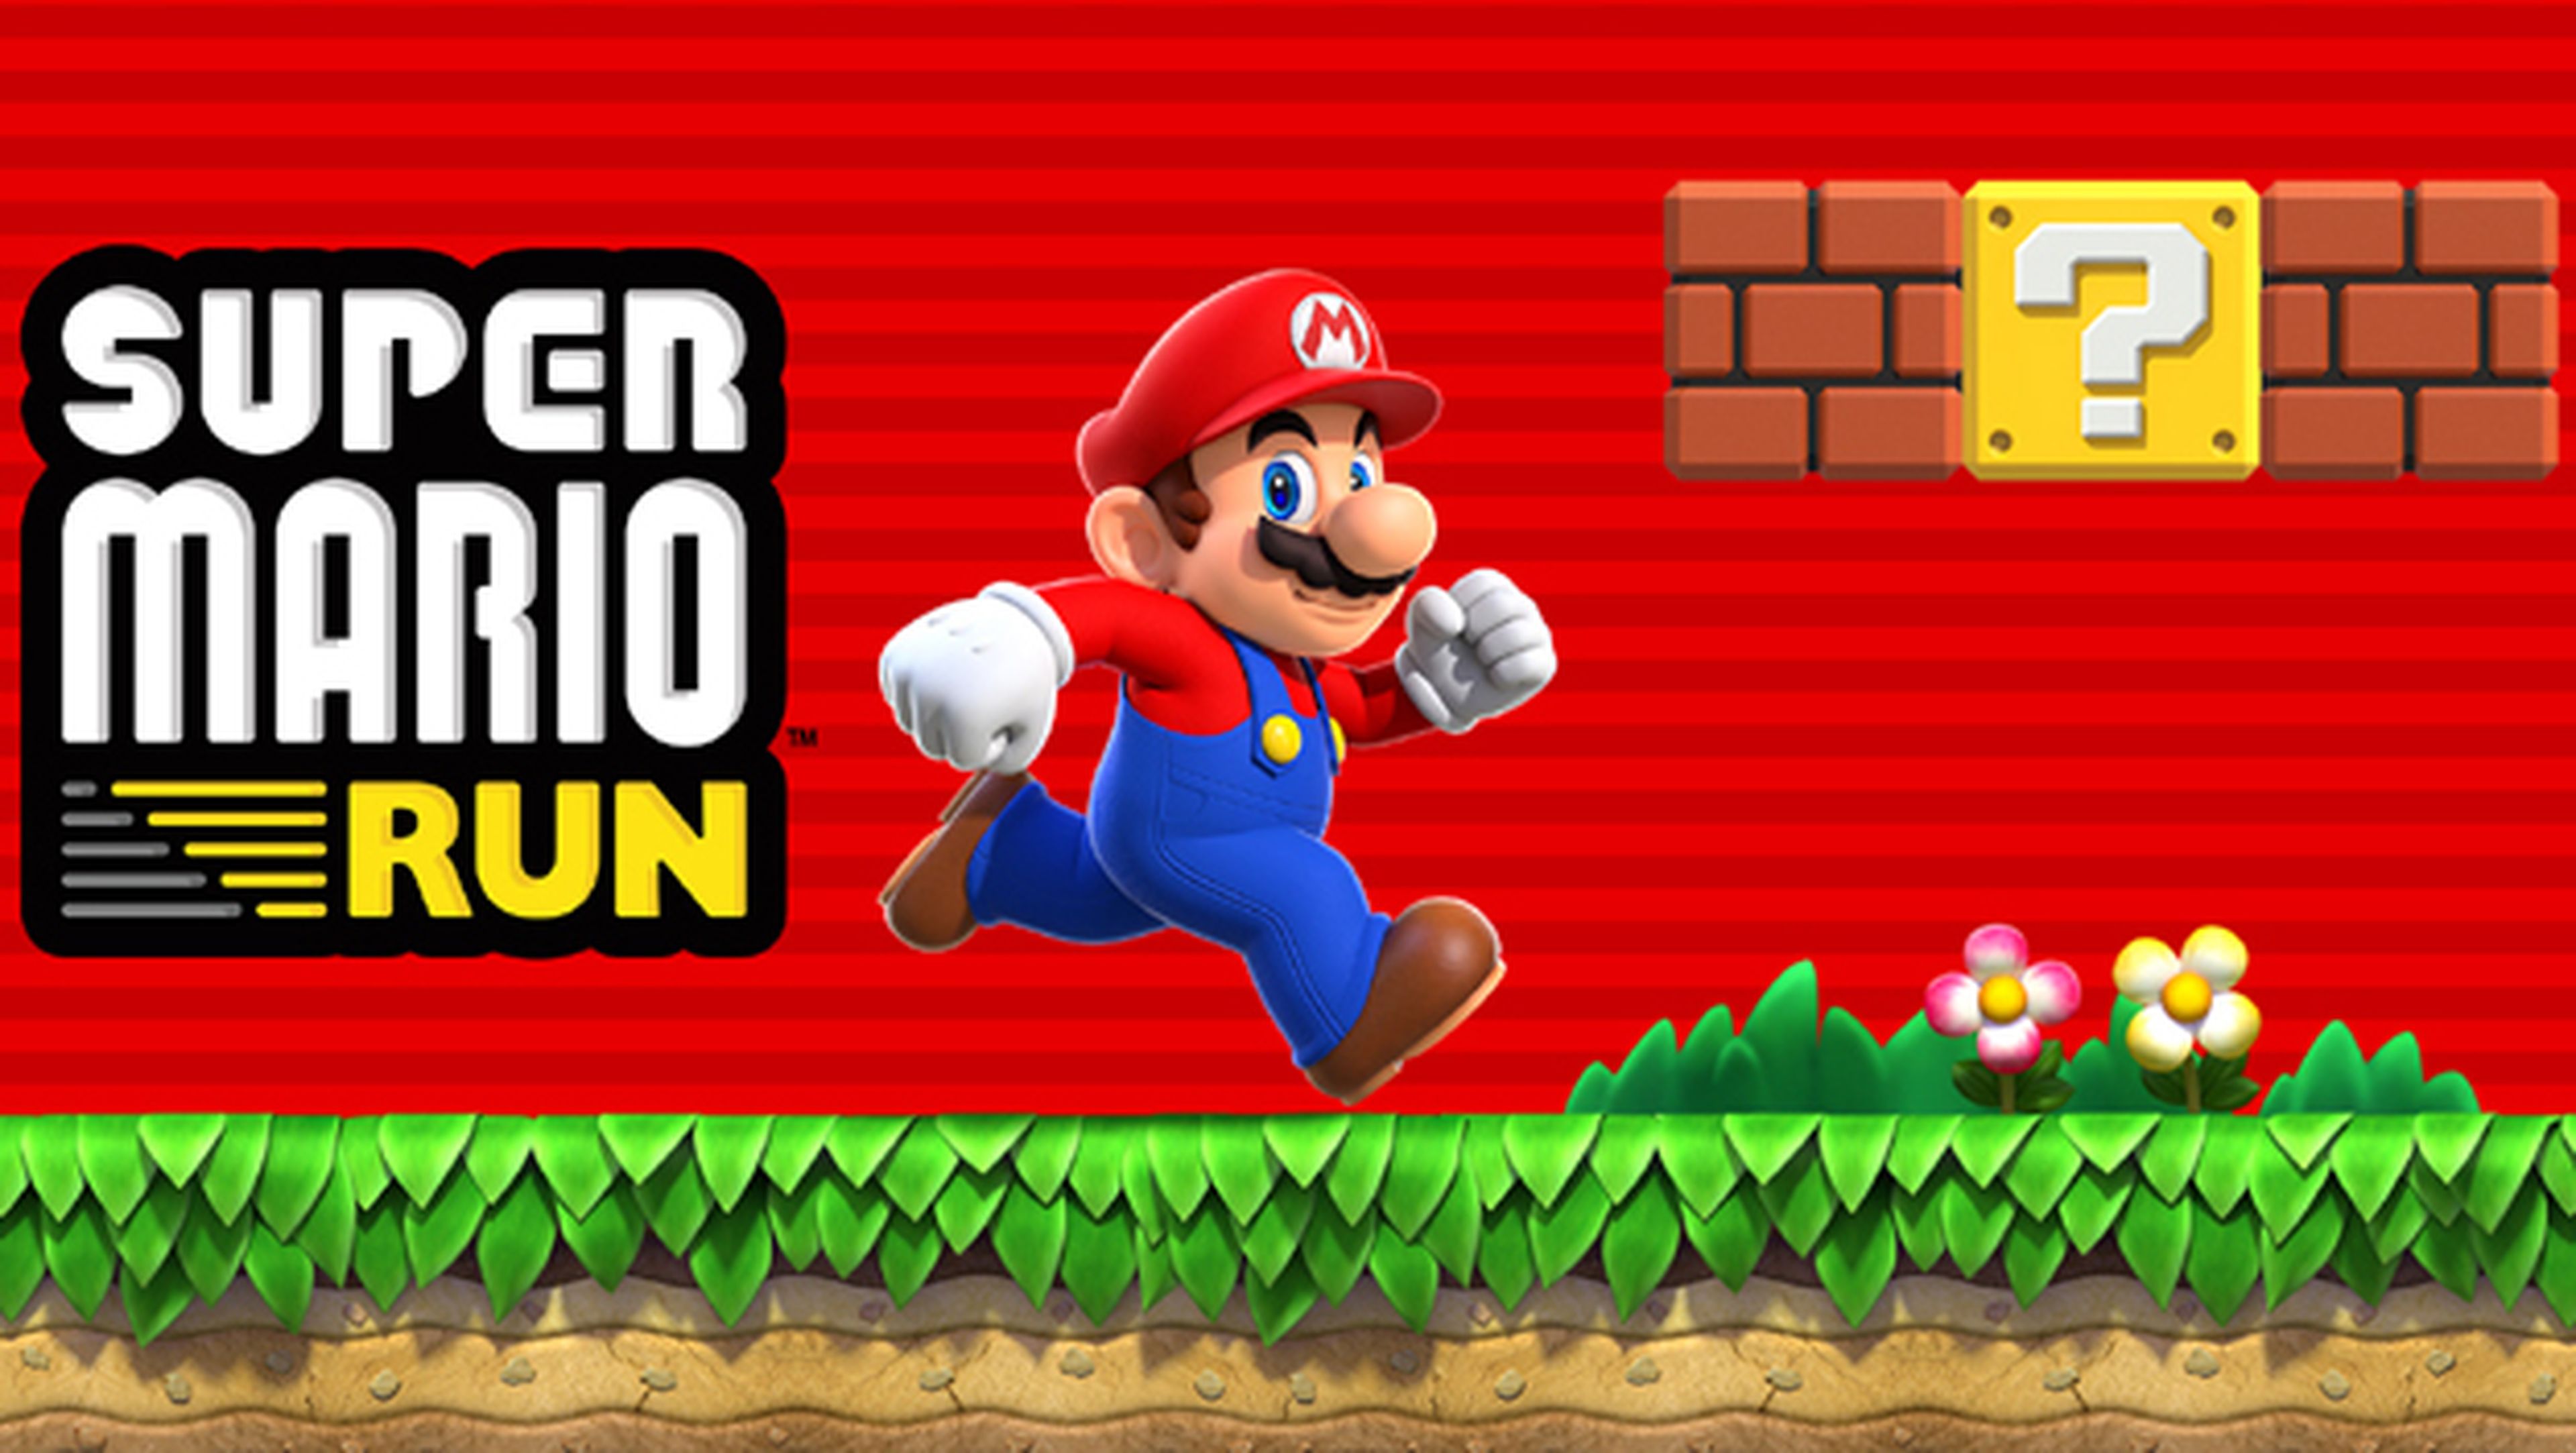 Demo de Super Mario Run en la App Store